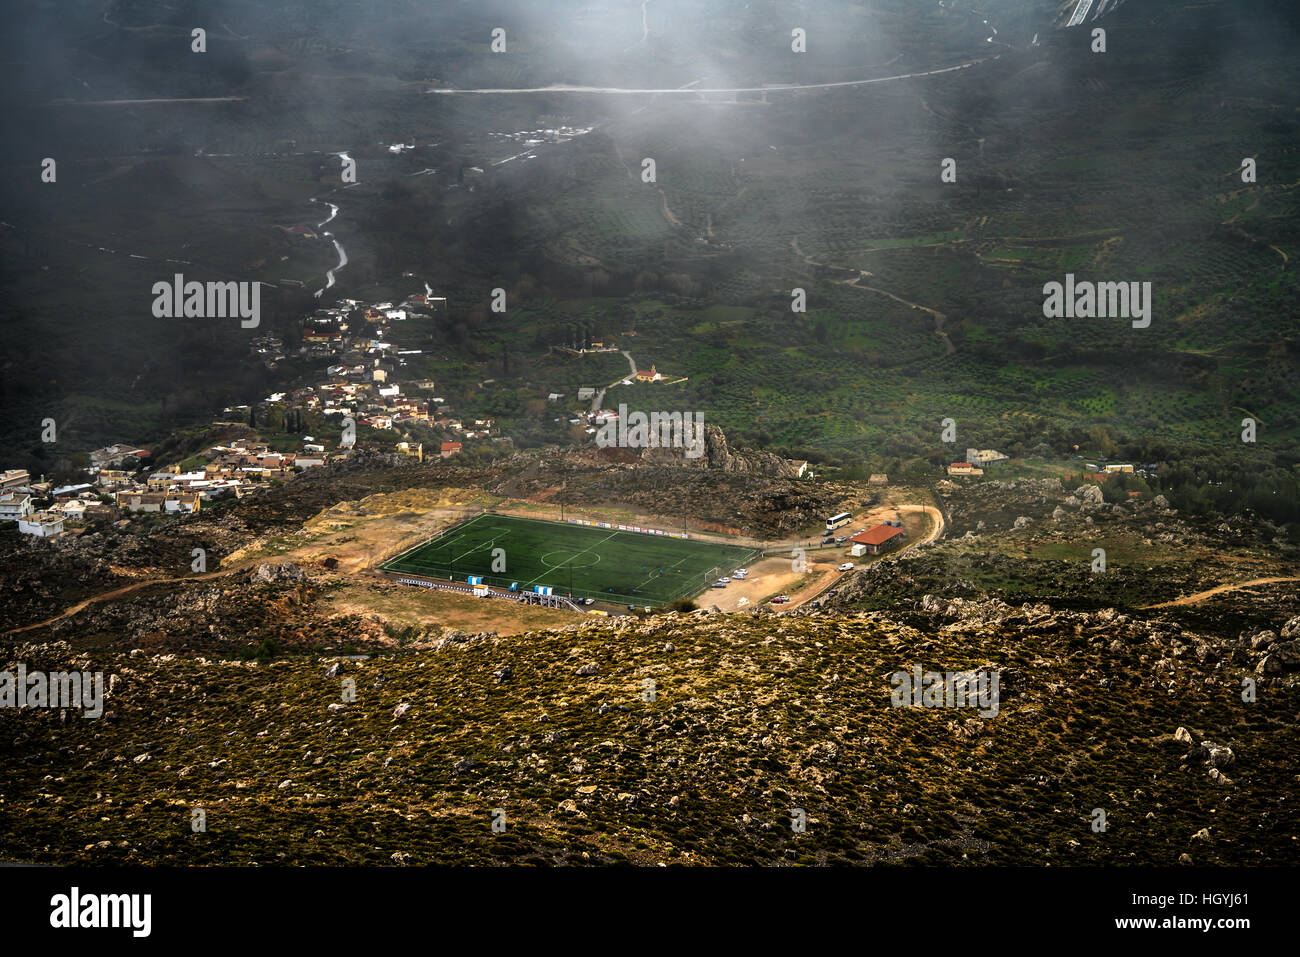 Cancha de fútbol en la meseta de la montaña. Gergeri pueblo en Creta (Grecia). Antes del comienzo del partido, durante un día lluvioso. Foto de stock